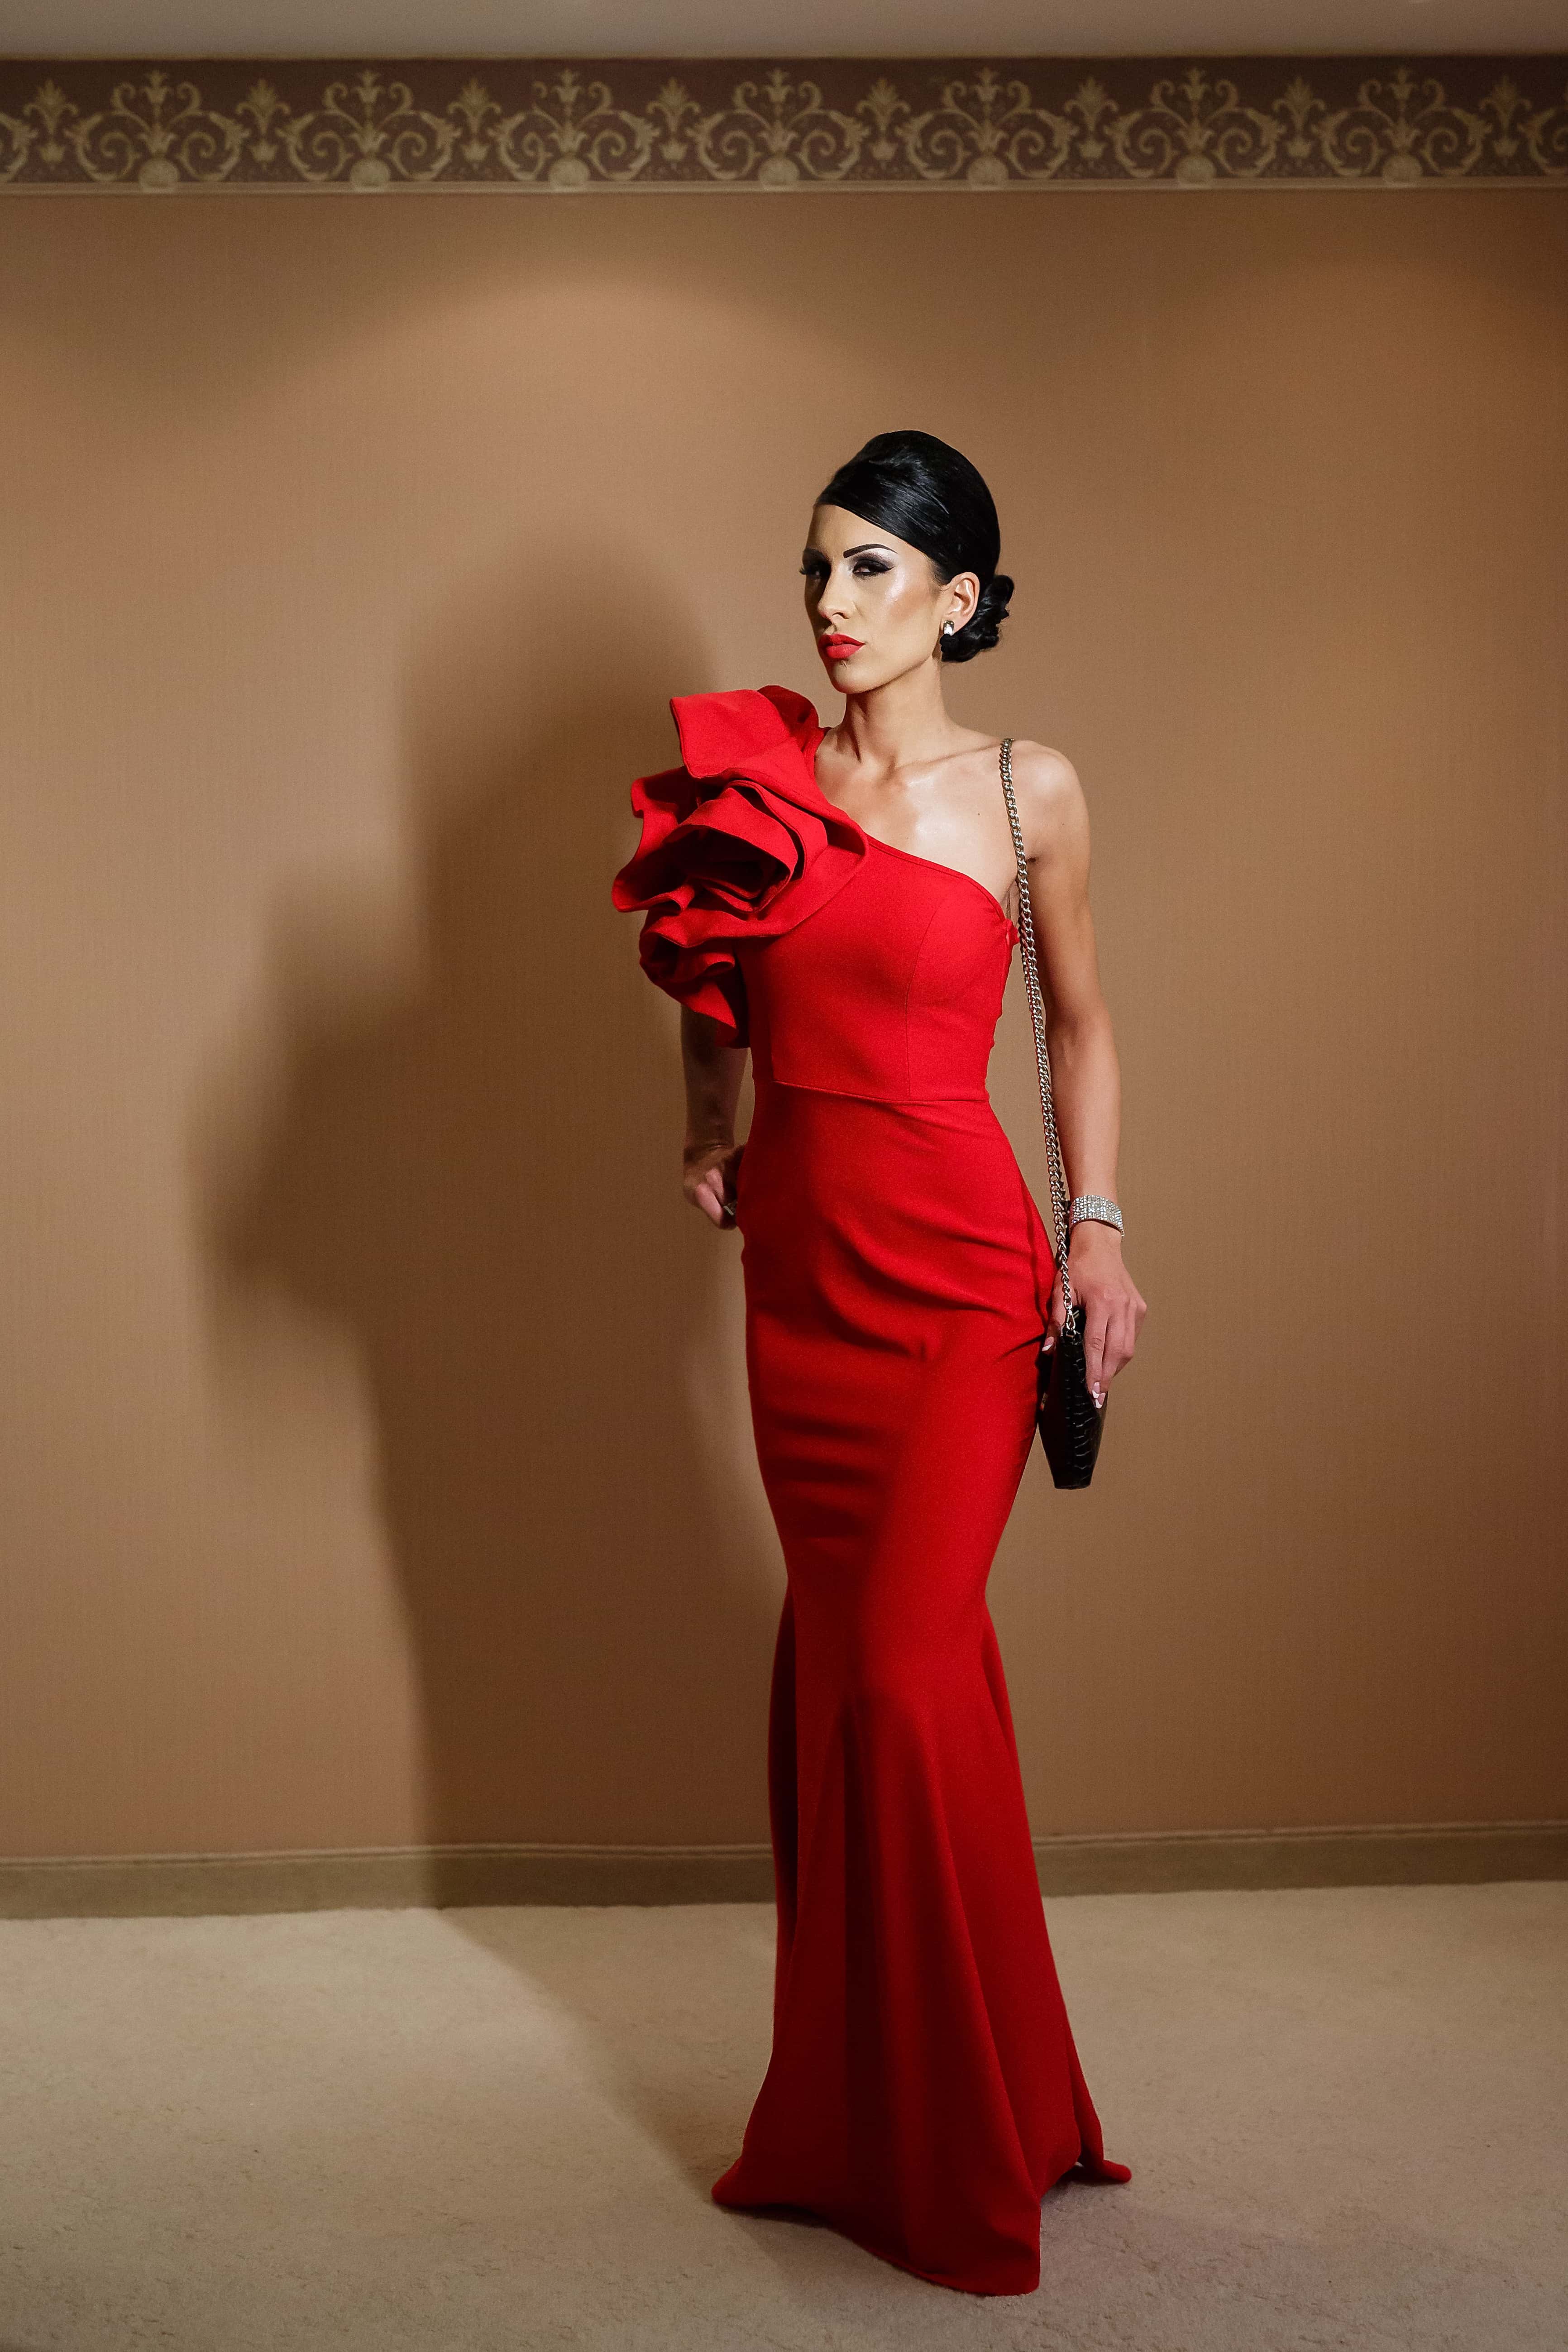 フリー写真画像 女性 スリム ファッション 衣装 赤 ドレス ハンドバッグ ポーズ 魅力的です 女性